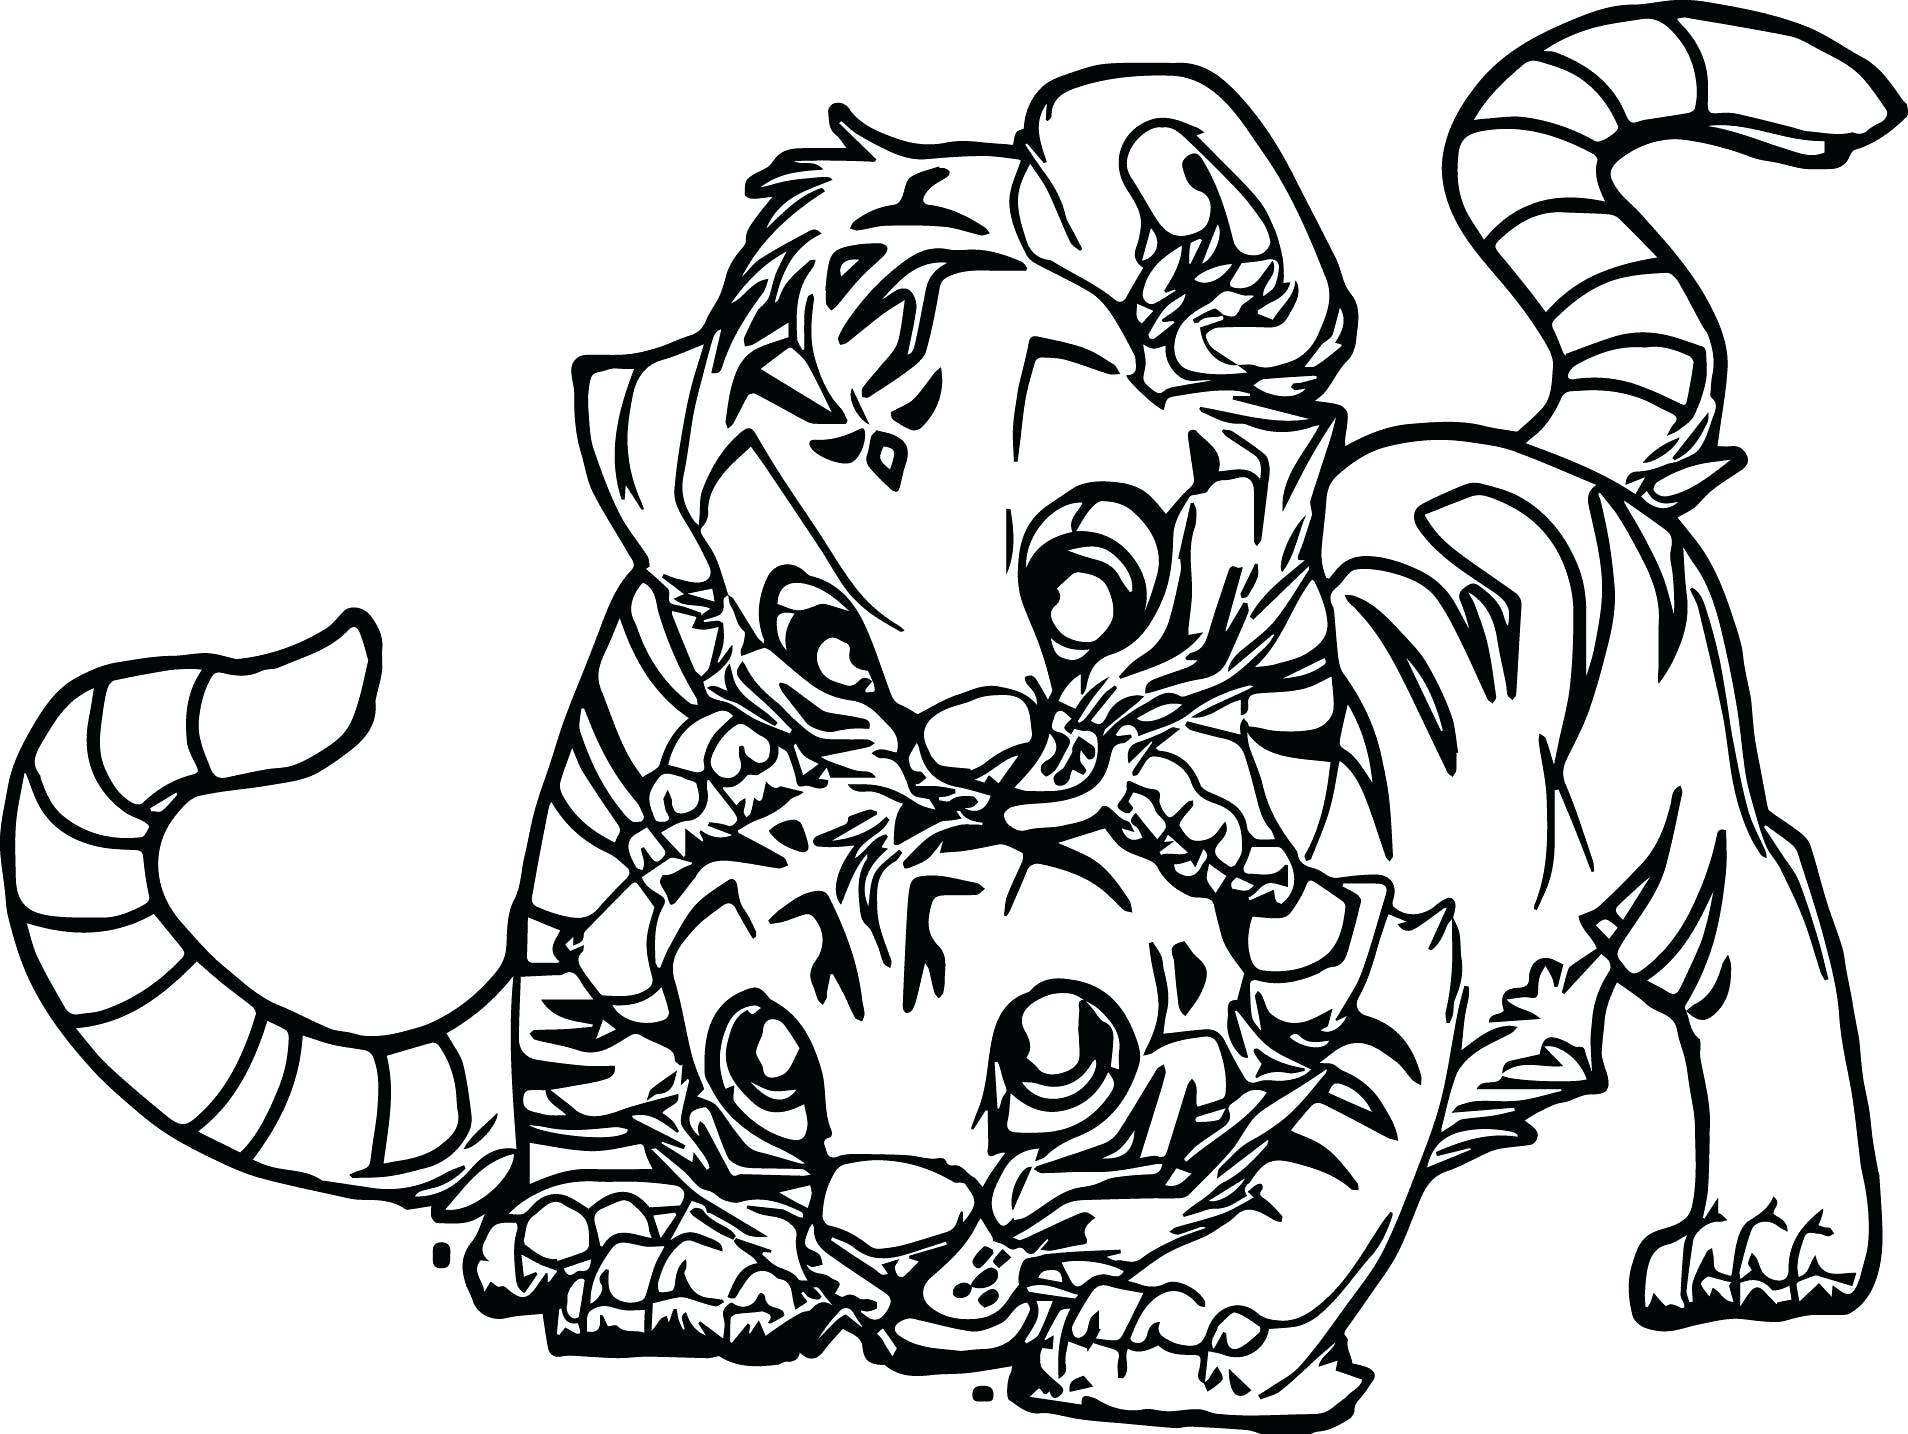 Tranh tô màu 2 con hổ con chơi với nhau